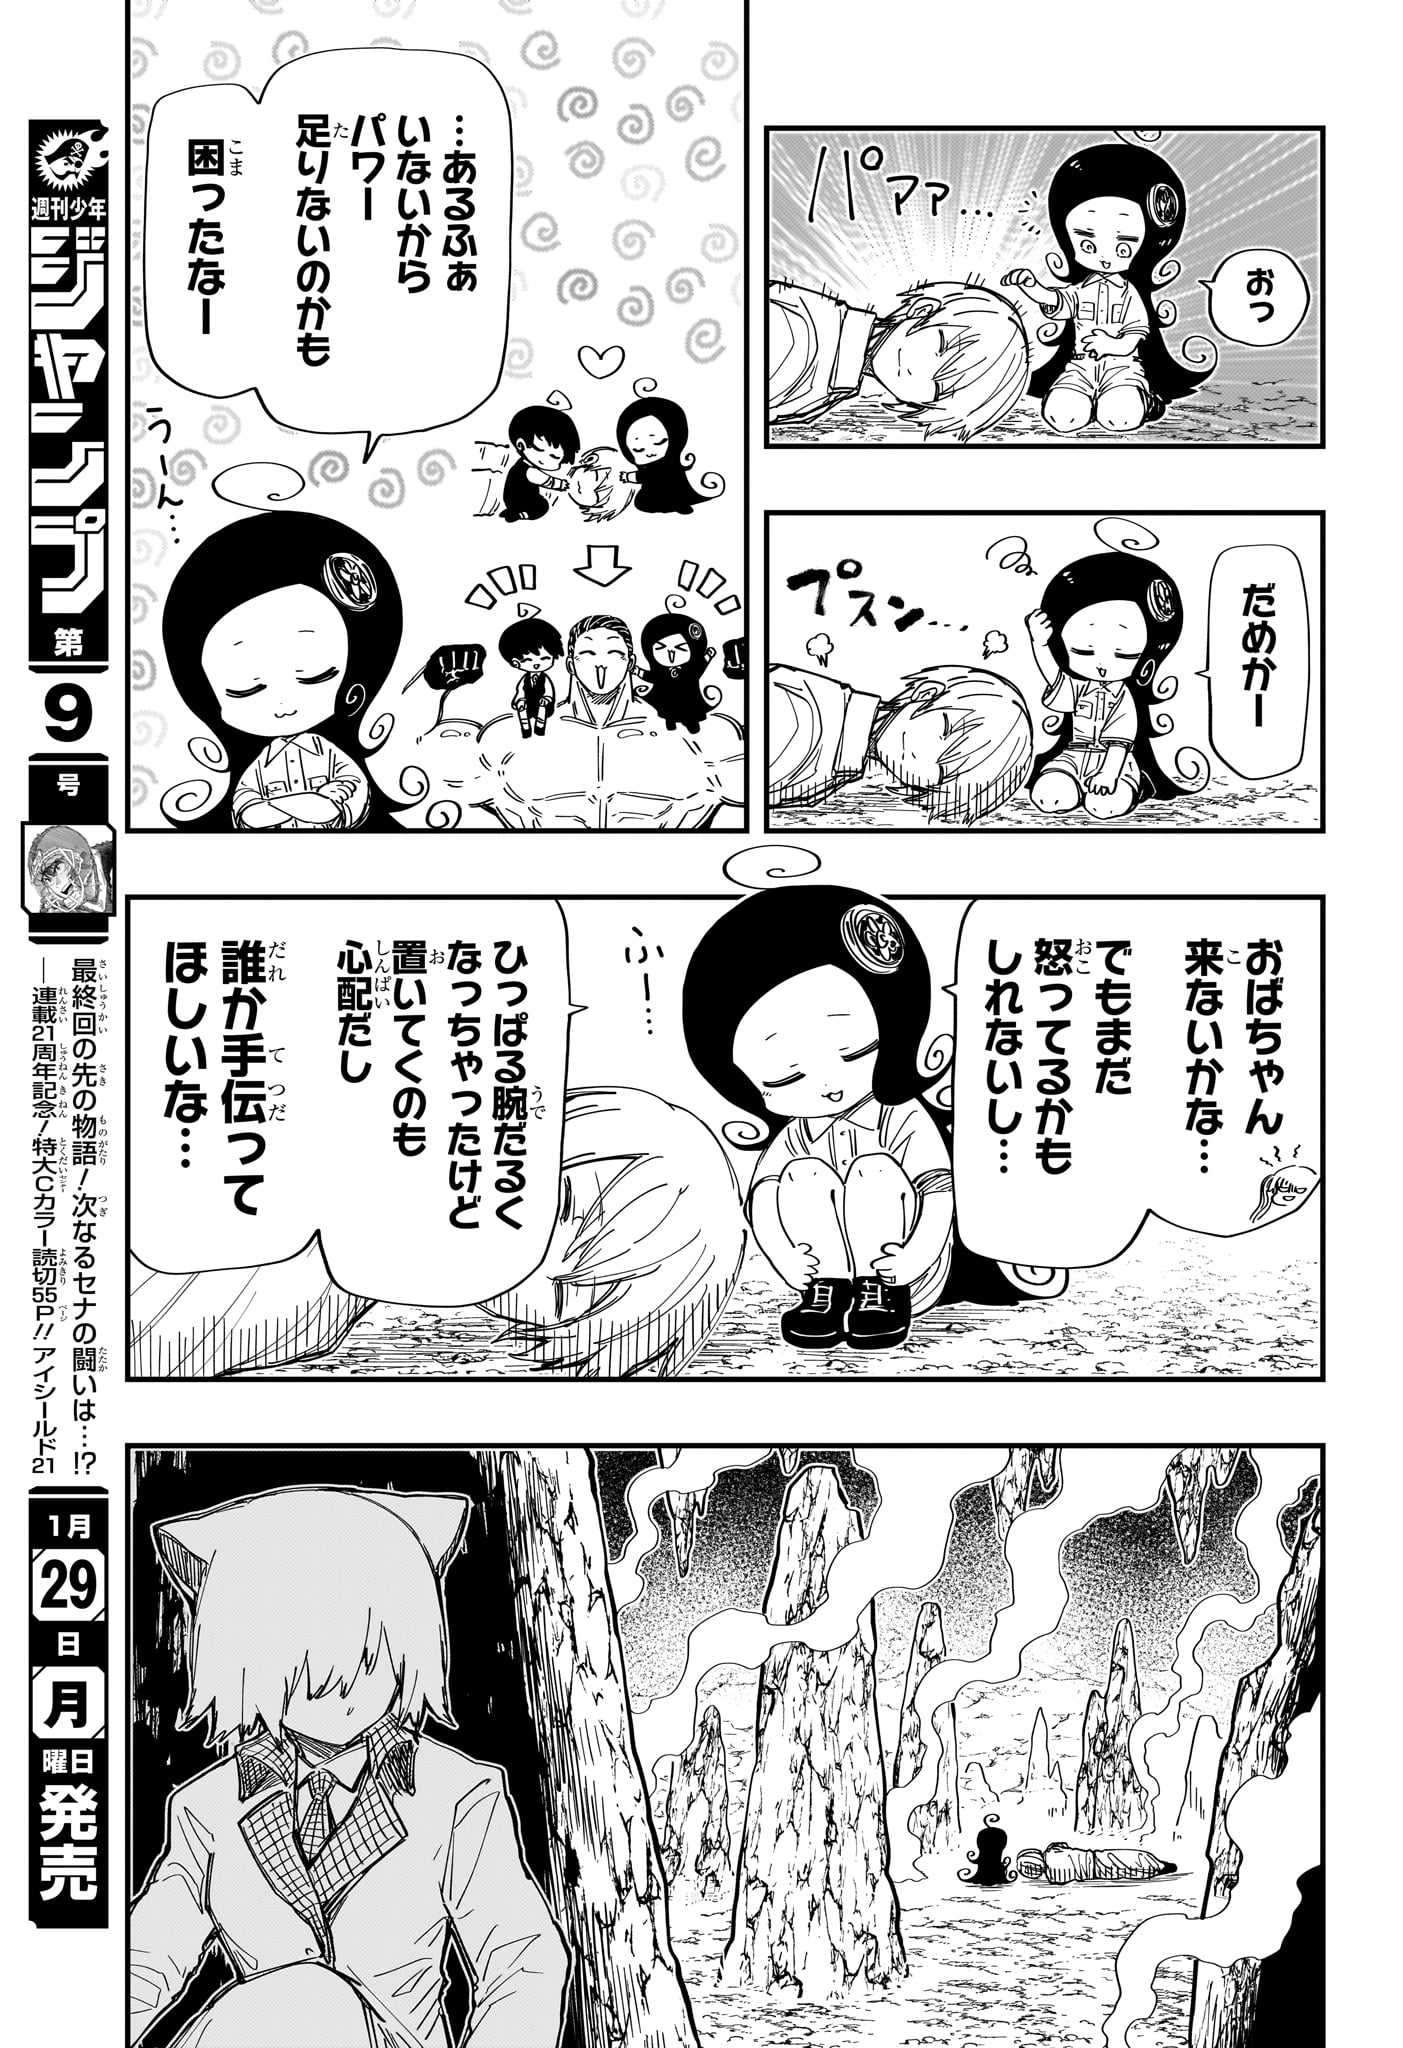 Yozakura-san Chi no Daisakusen - Chapter 210 - Page 3